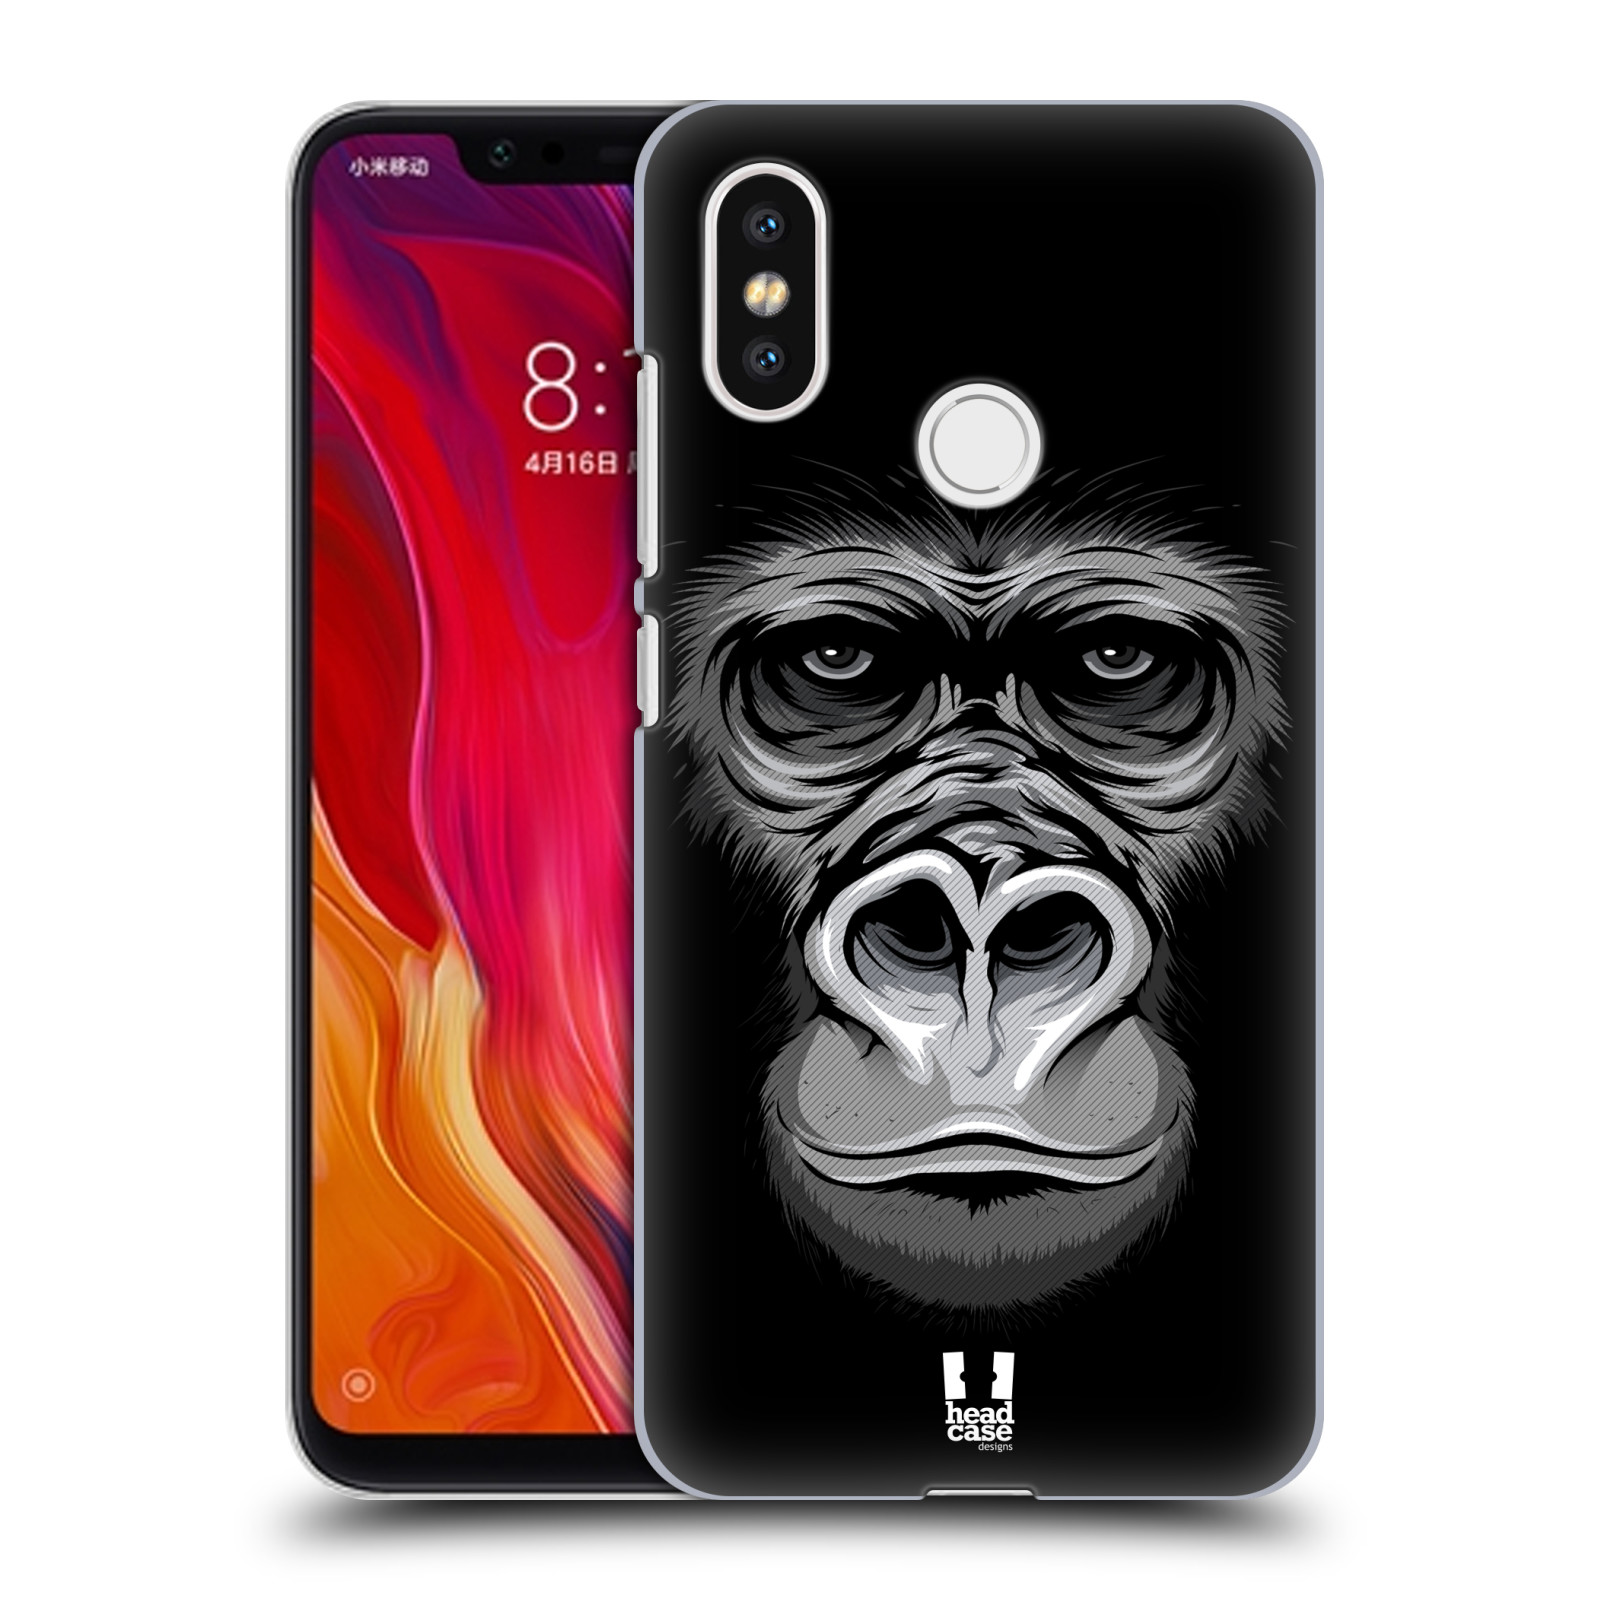 HEAD CASE plastový obal na mobil Xiaomi Mi 8 vzor Zvíře kreslená tvář 2 gorila